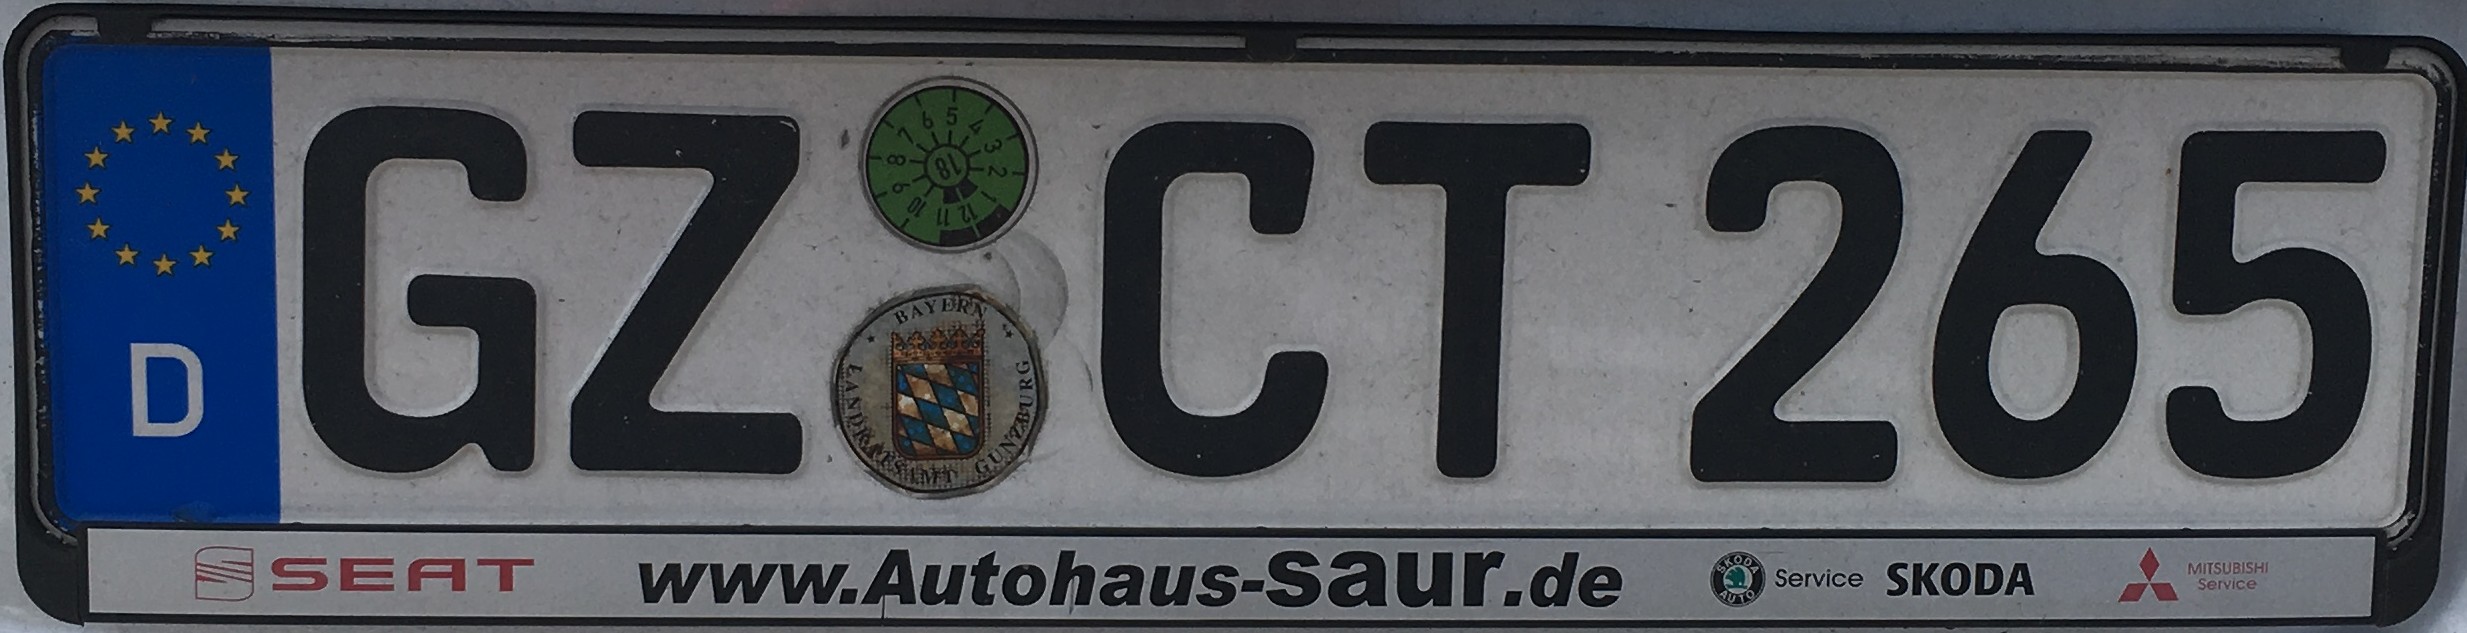 Registrační značky Německo - GZ - Günzburg, foto: vlastní